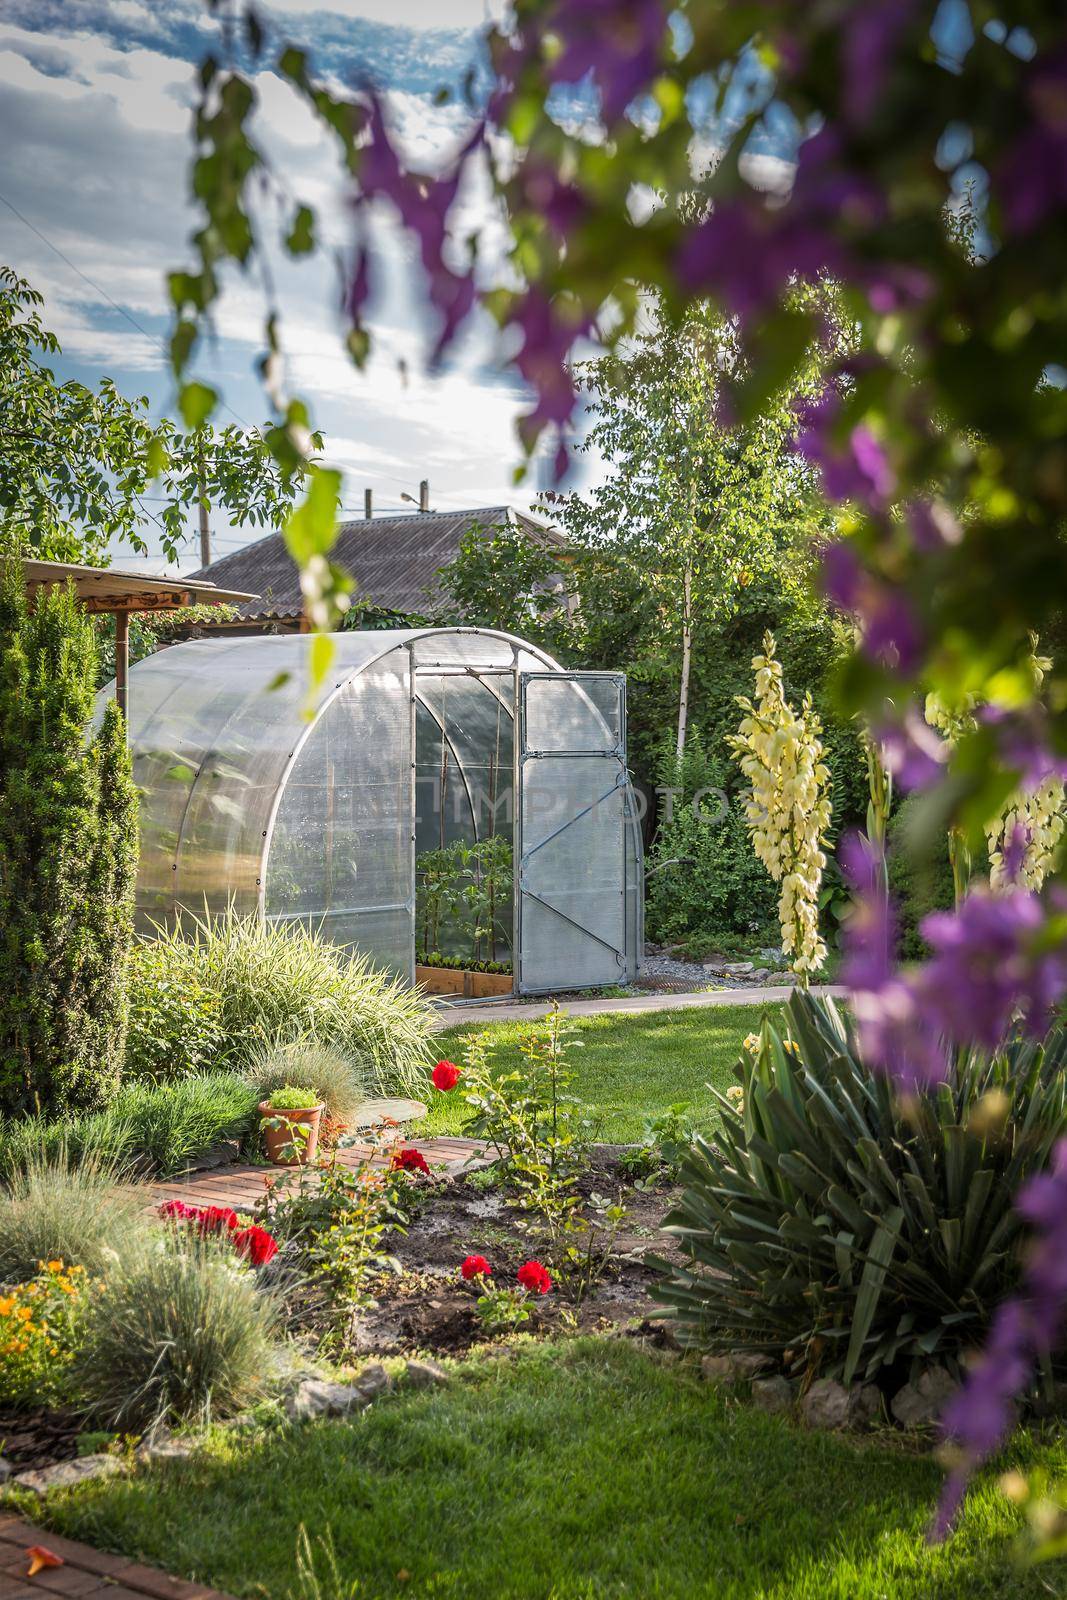 Greenhouse in back garden with open door